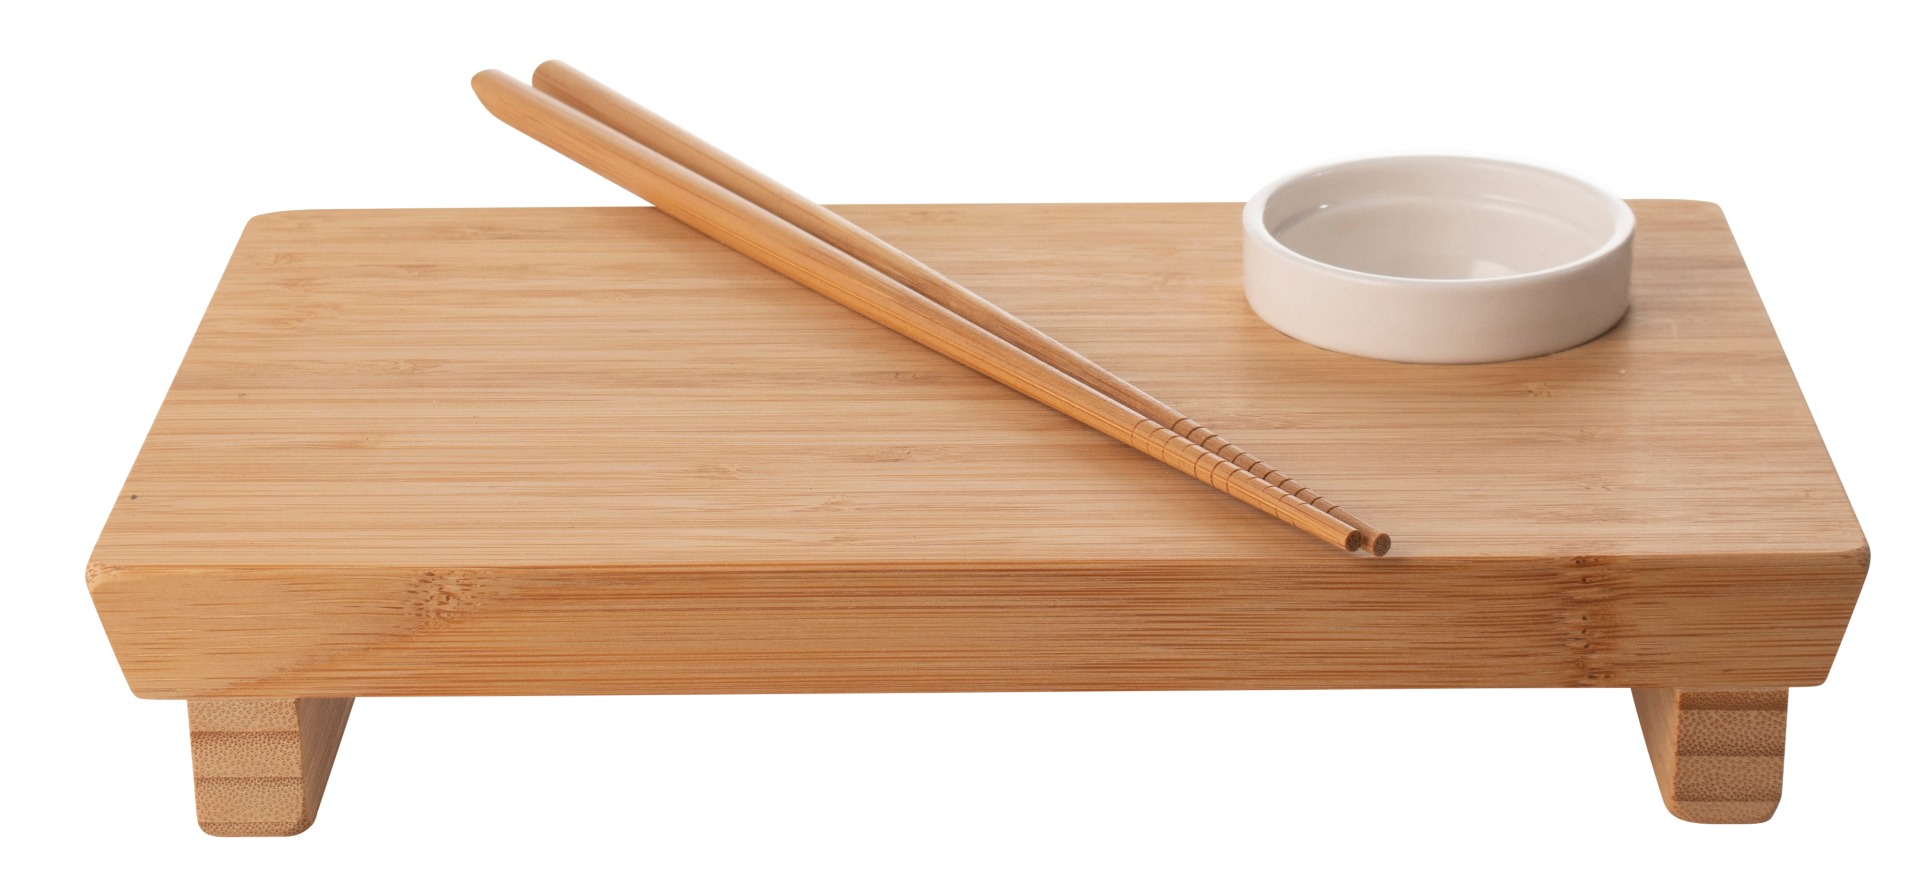 Sushi tray giftset